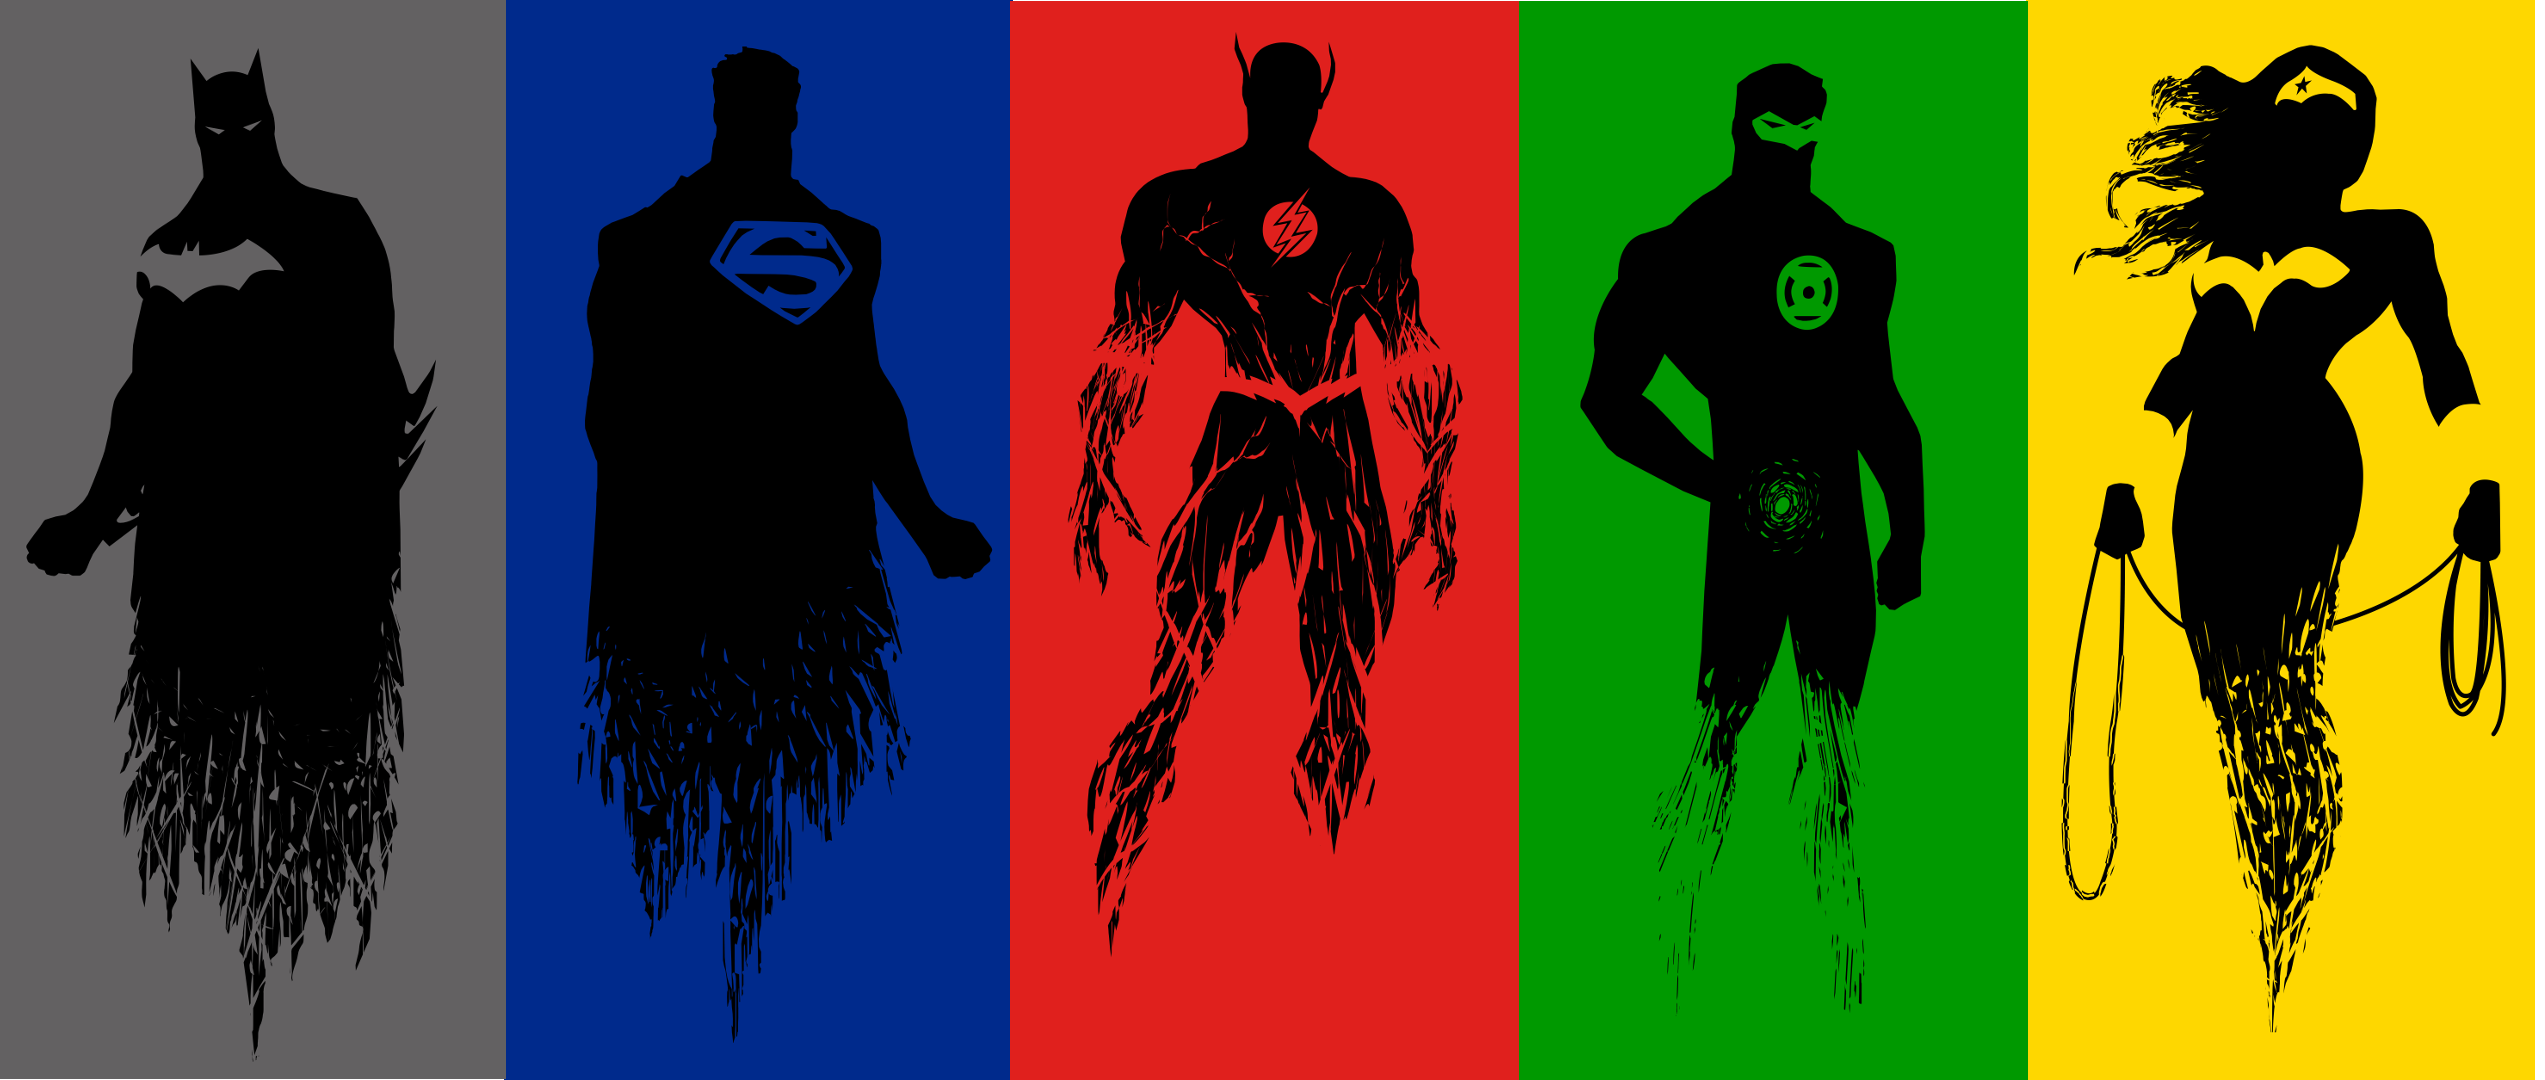 CBMB: Justice League Plot Details Suggest a 'Dark' Villainous ...